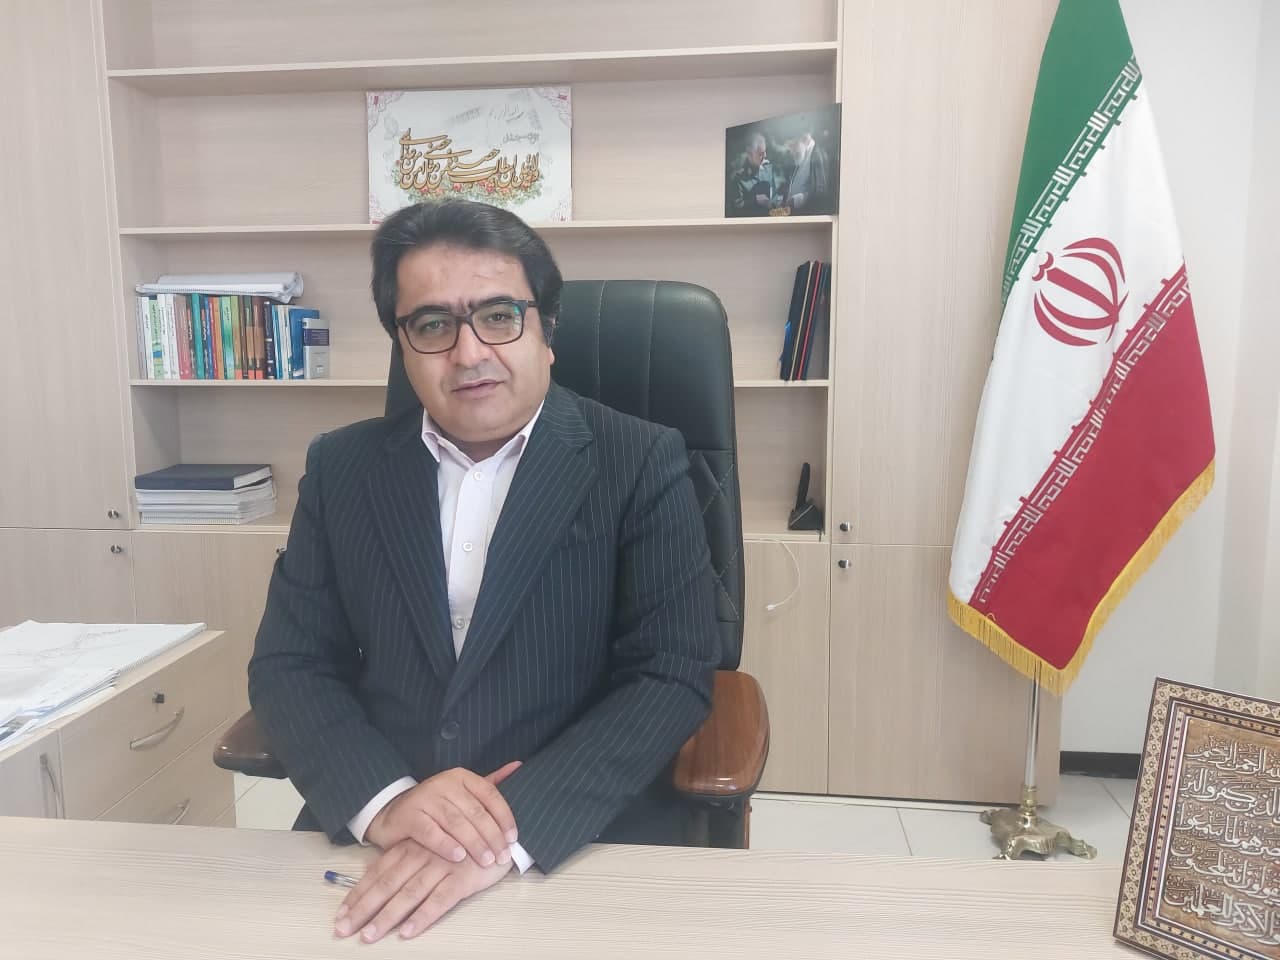 پیام تبریک شهردار اردکان به مناسبت فرا رسیدن ۱۴ تیرماه روز شهرداری ها و دهیاری ها